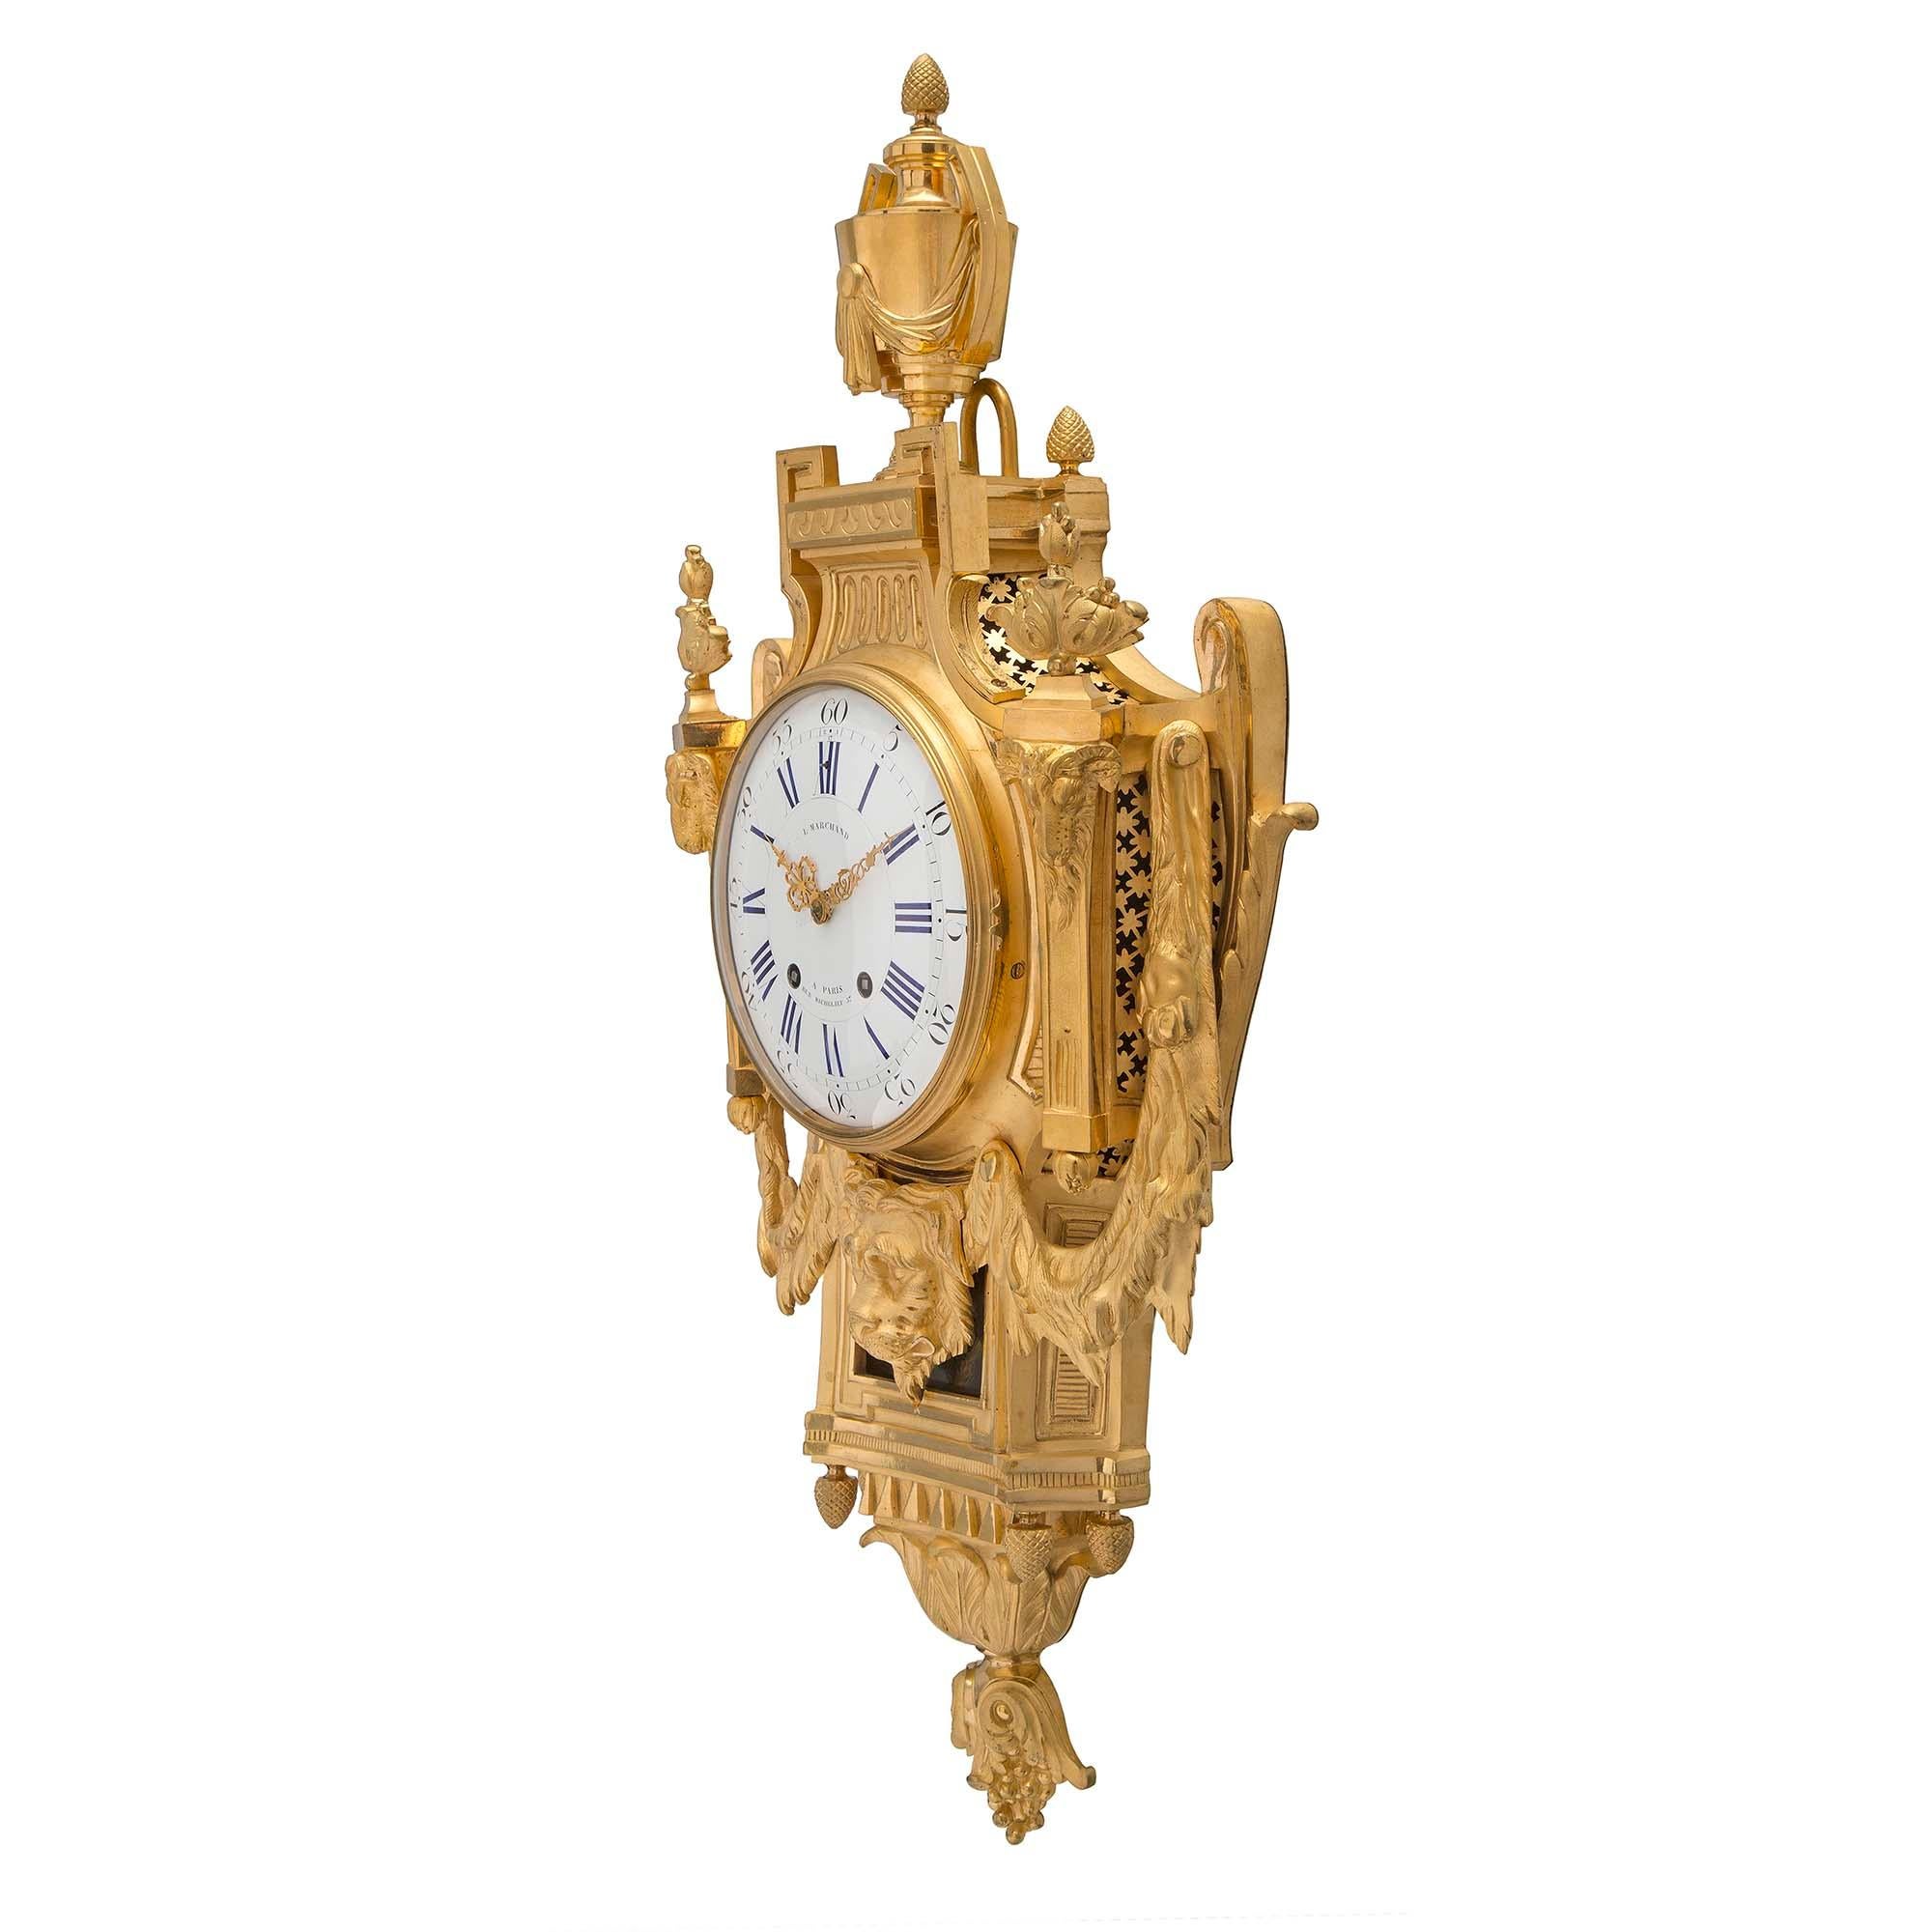 Superbe horloge cartel en bronze doré de style Louis XVI du 19ème siècle, par L. Marchand. L'horloge présente un fin fleuron inversé à base de baies et de feuillages finement gravés, sous quatre fleurons à gland. Au-dessus, une belle et